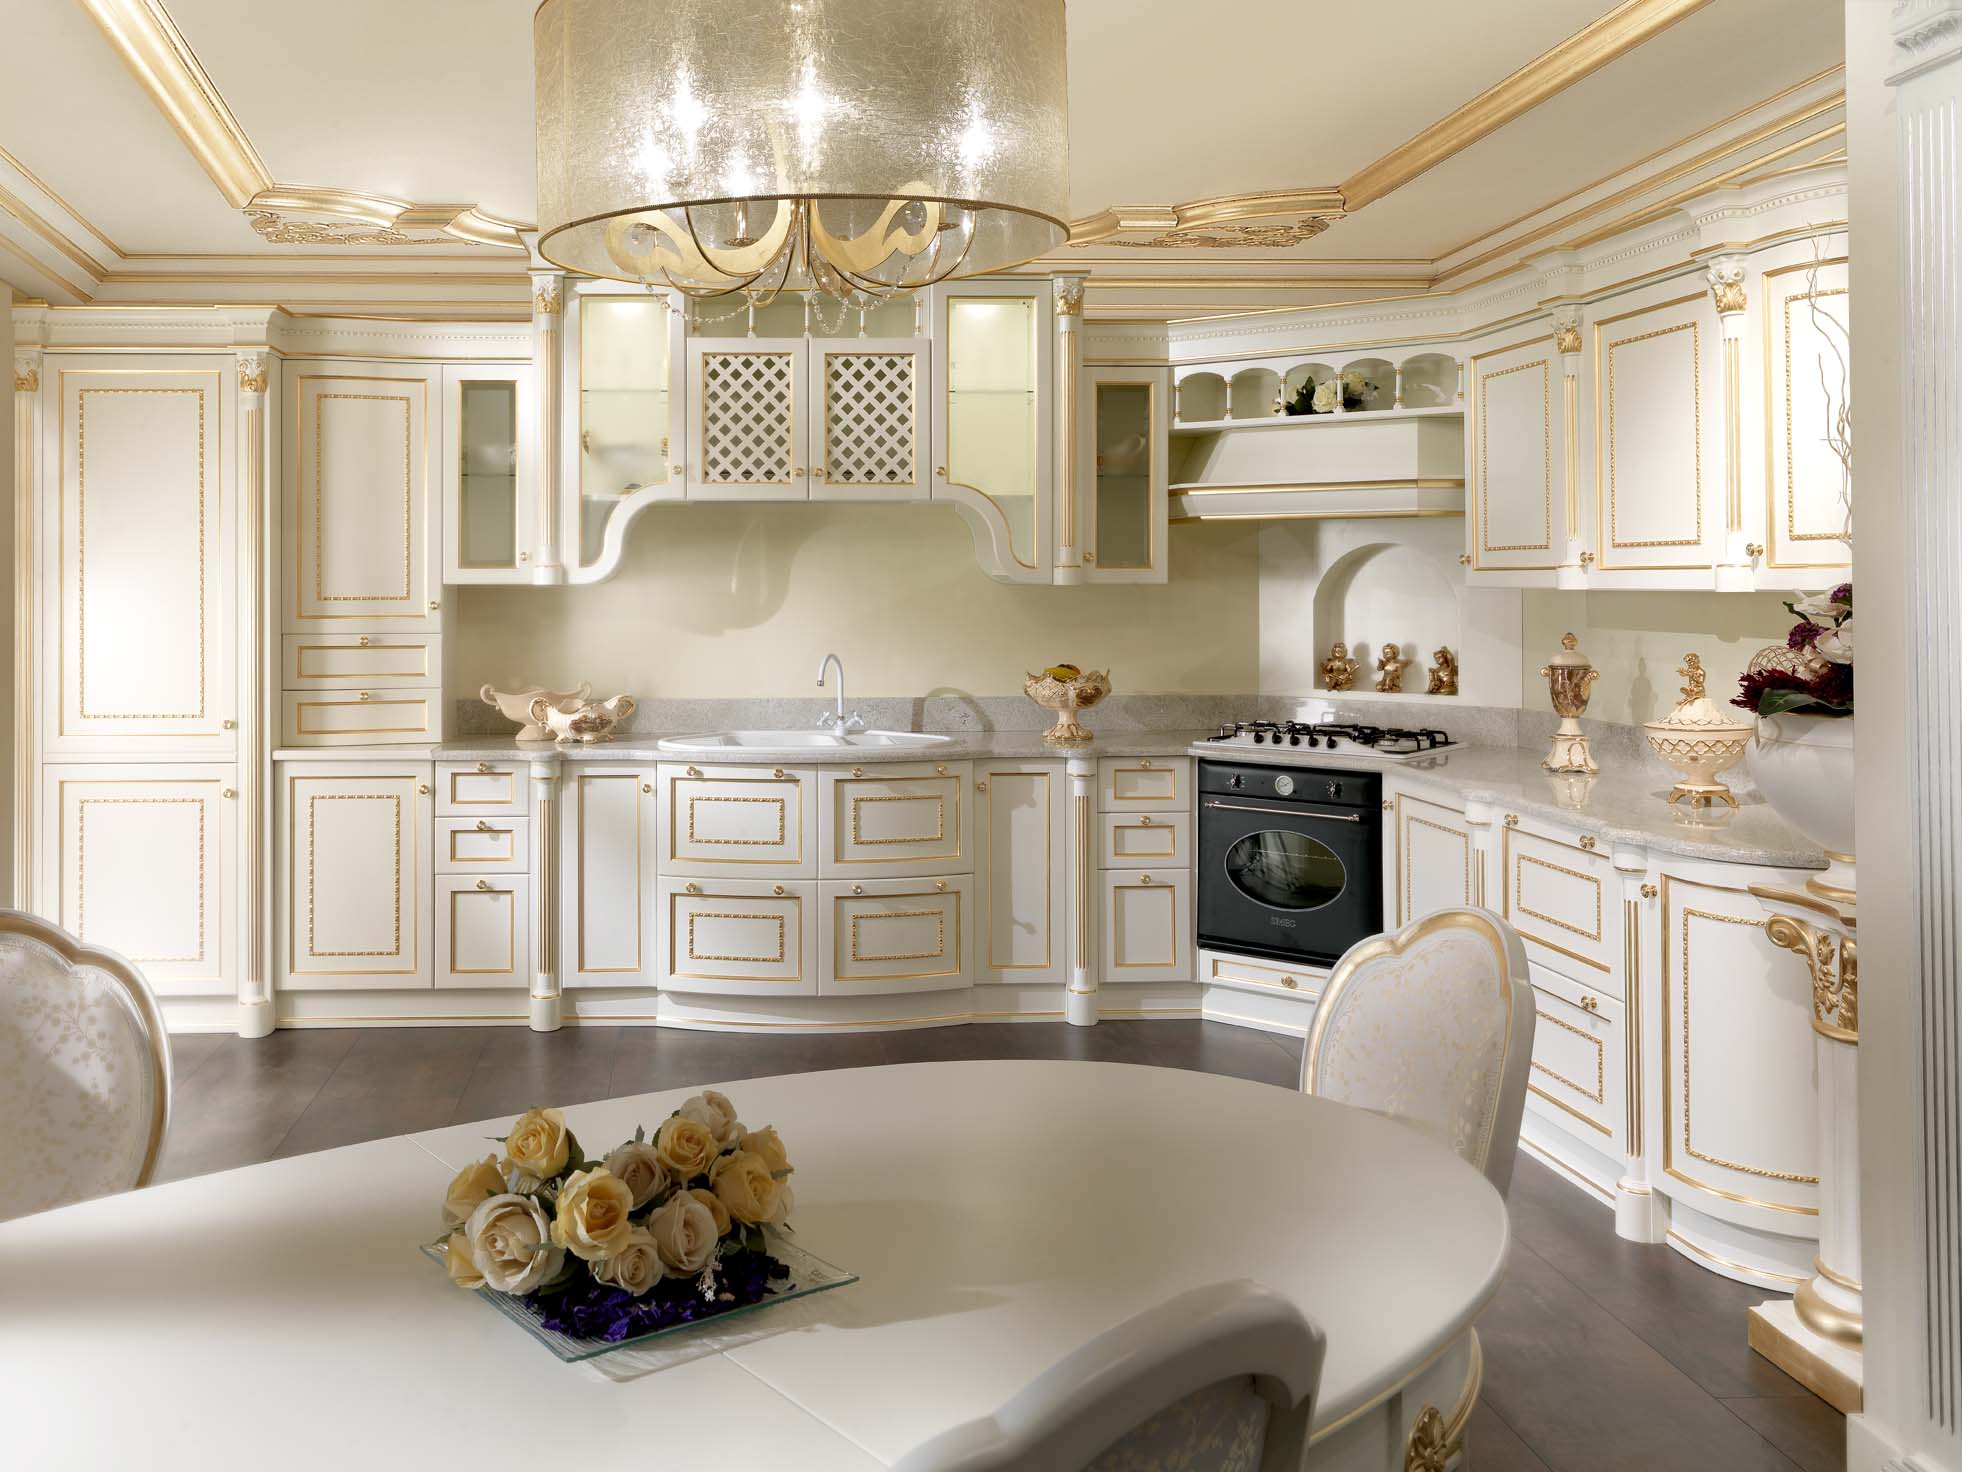 Białe wnętrze kuchni ze złoconymi detalami.